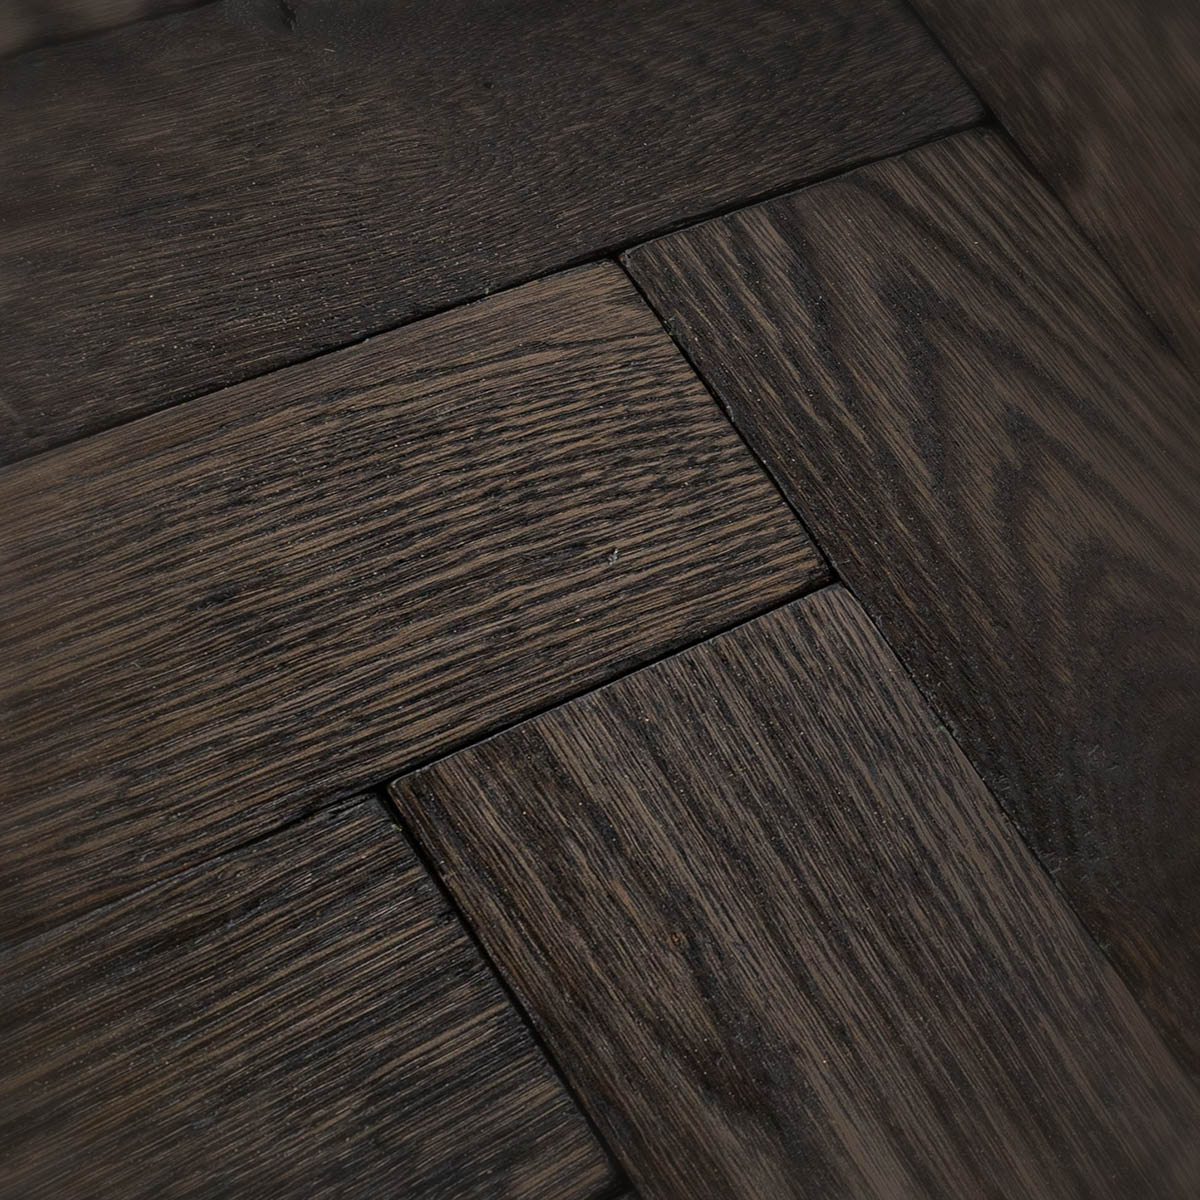 Dacre Park - Solid Oak Polished Herringbone Floor